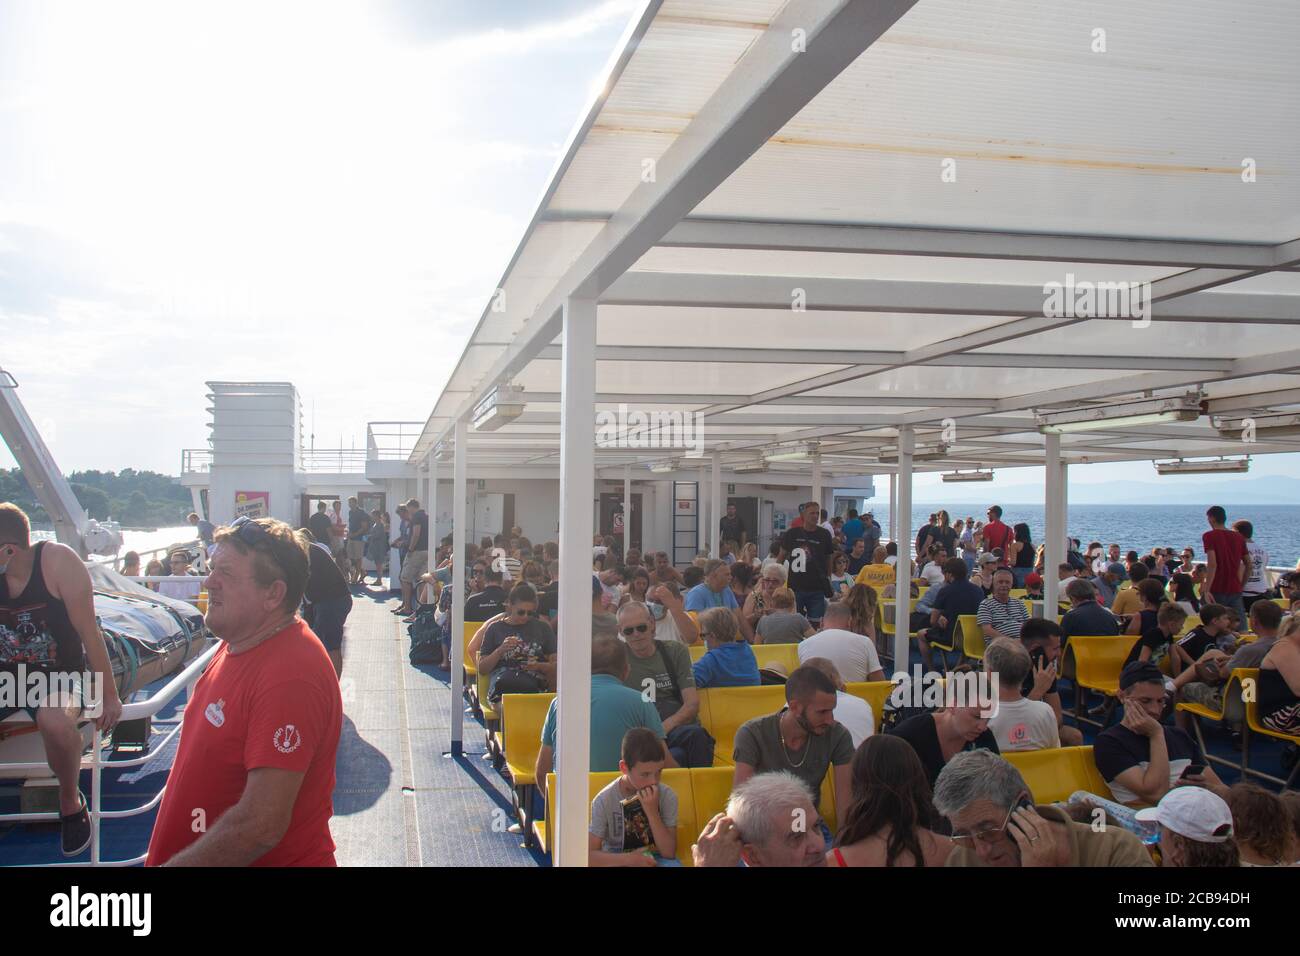 Supetar Croatie, août 2020 car ferry reliant Supetar et Split plein avec des passagers et des touristes voyageant pendant la pandémie de covid.Noone weli Banque D'Images